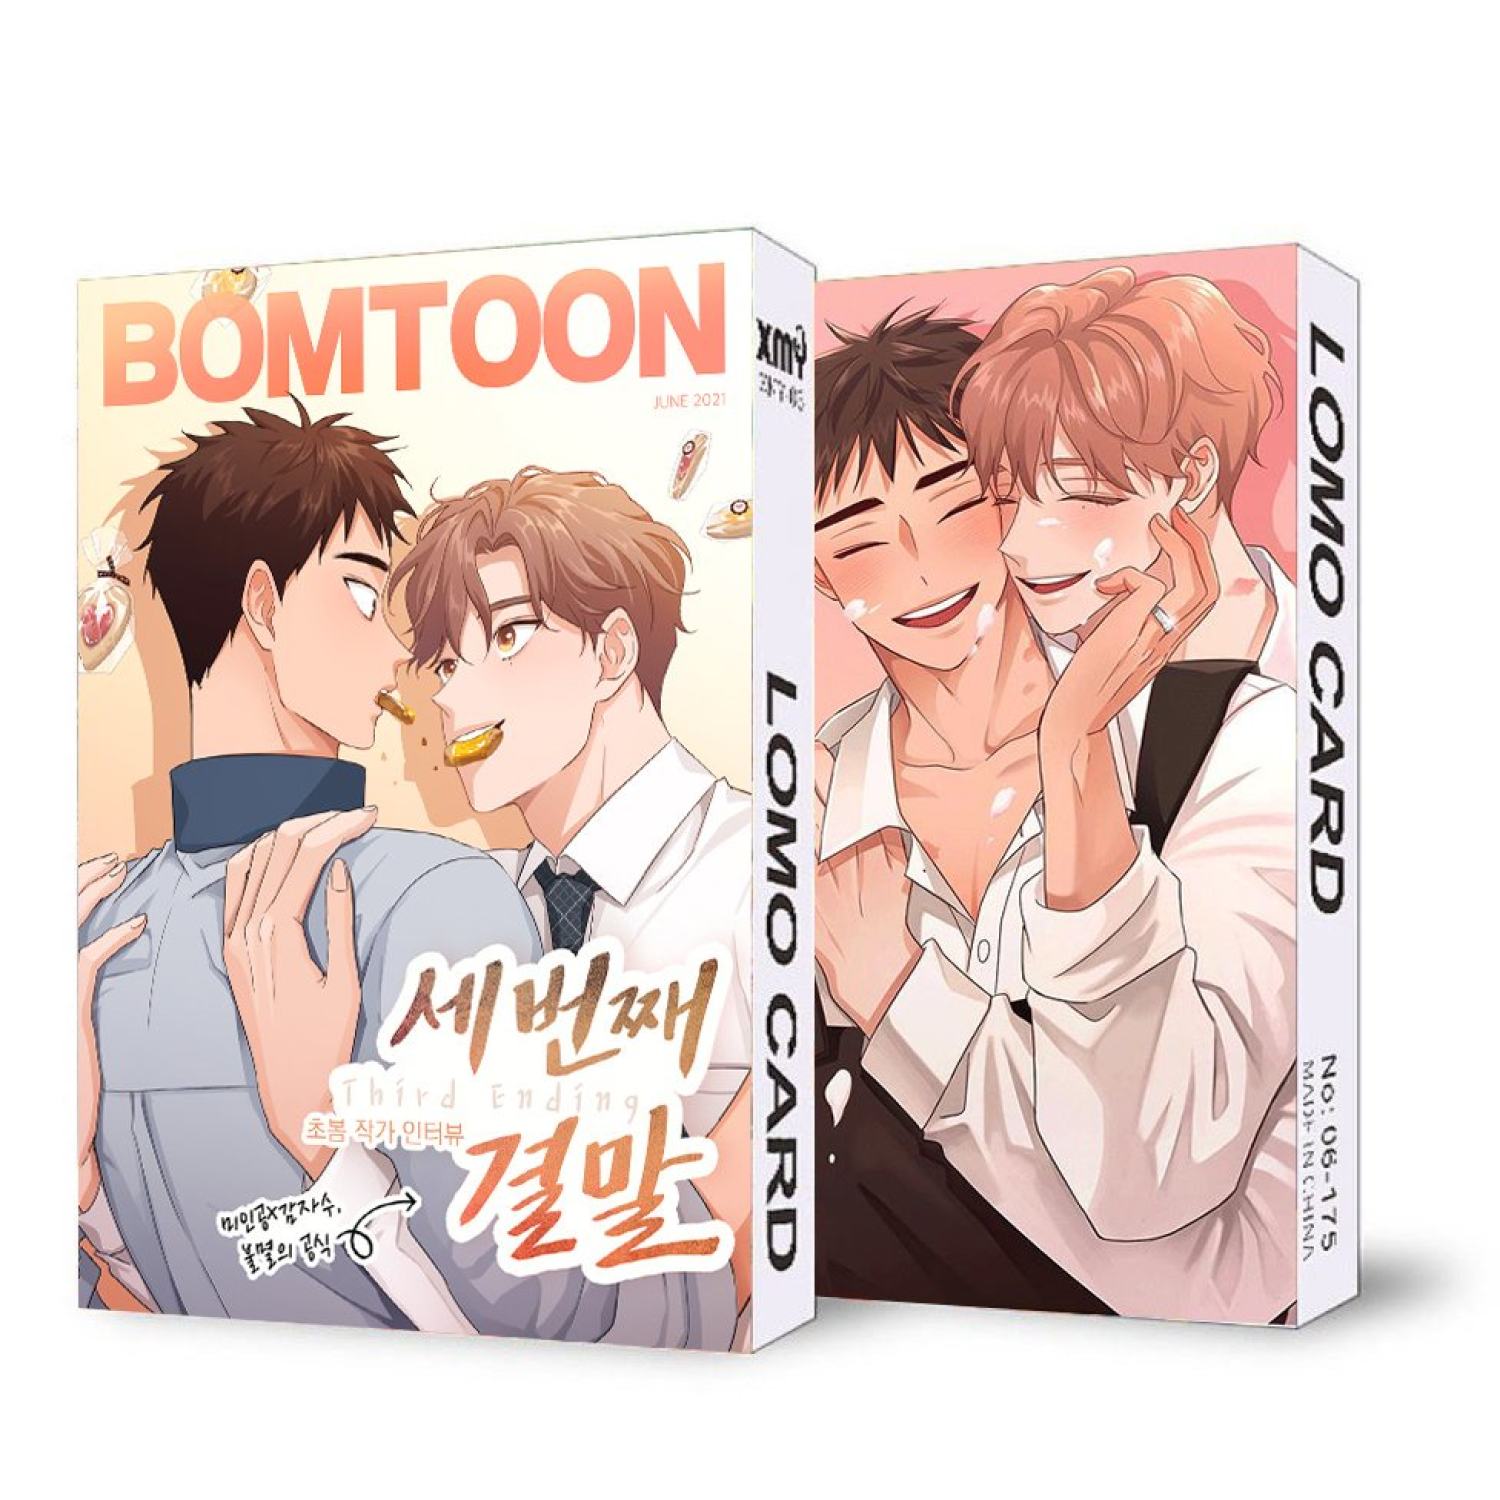 không kèm hộp  Hộp ảnh lomo in hình BOMTOON BL manhwa anime manga chibi